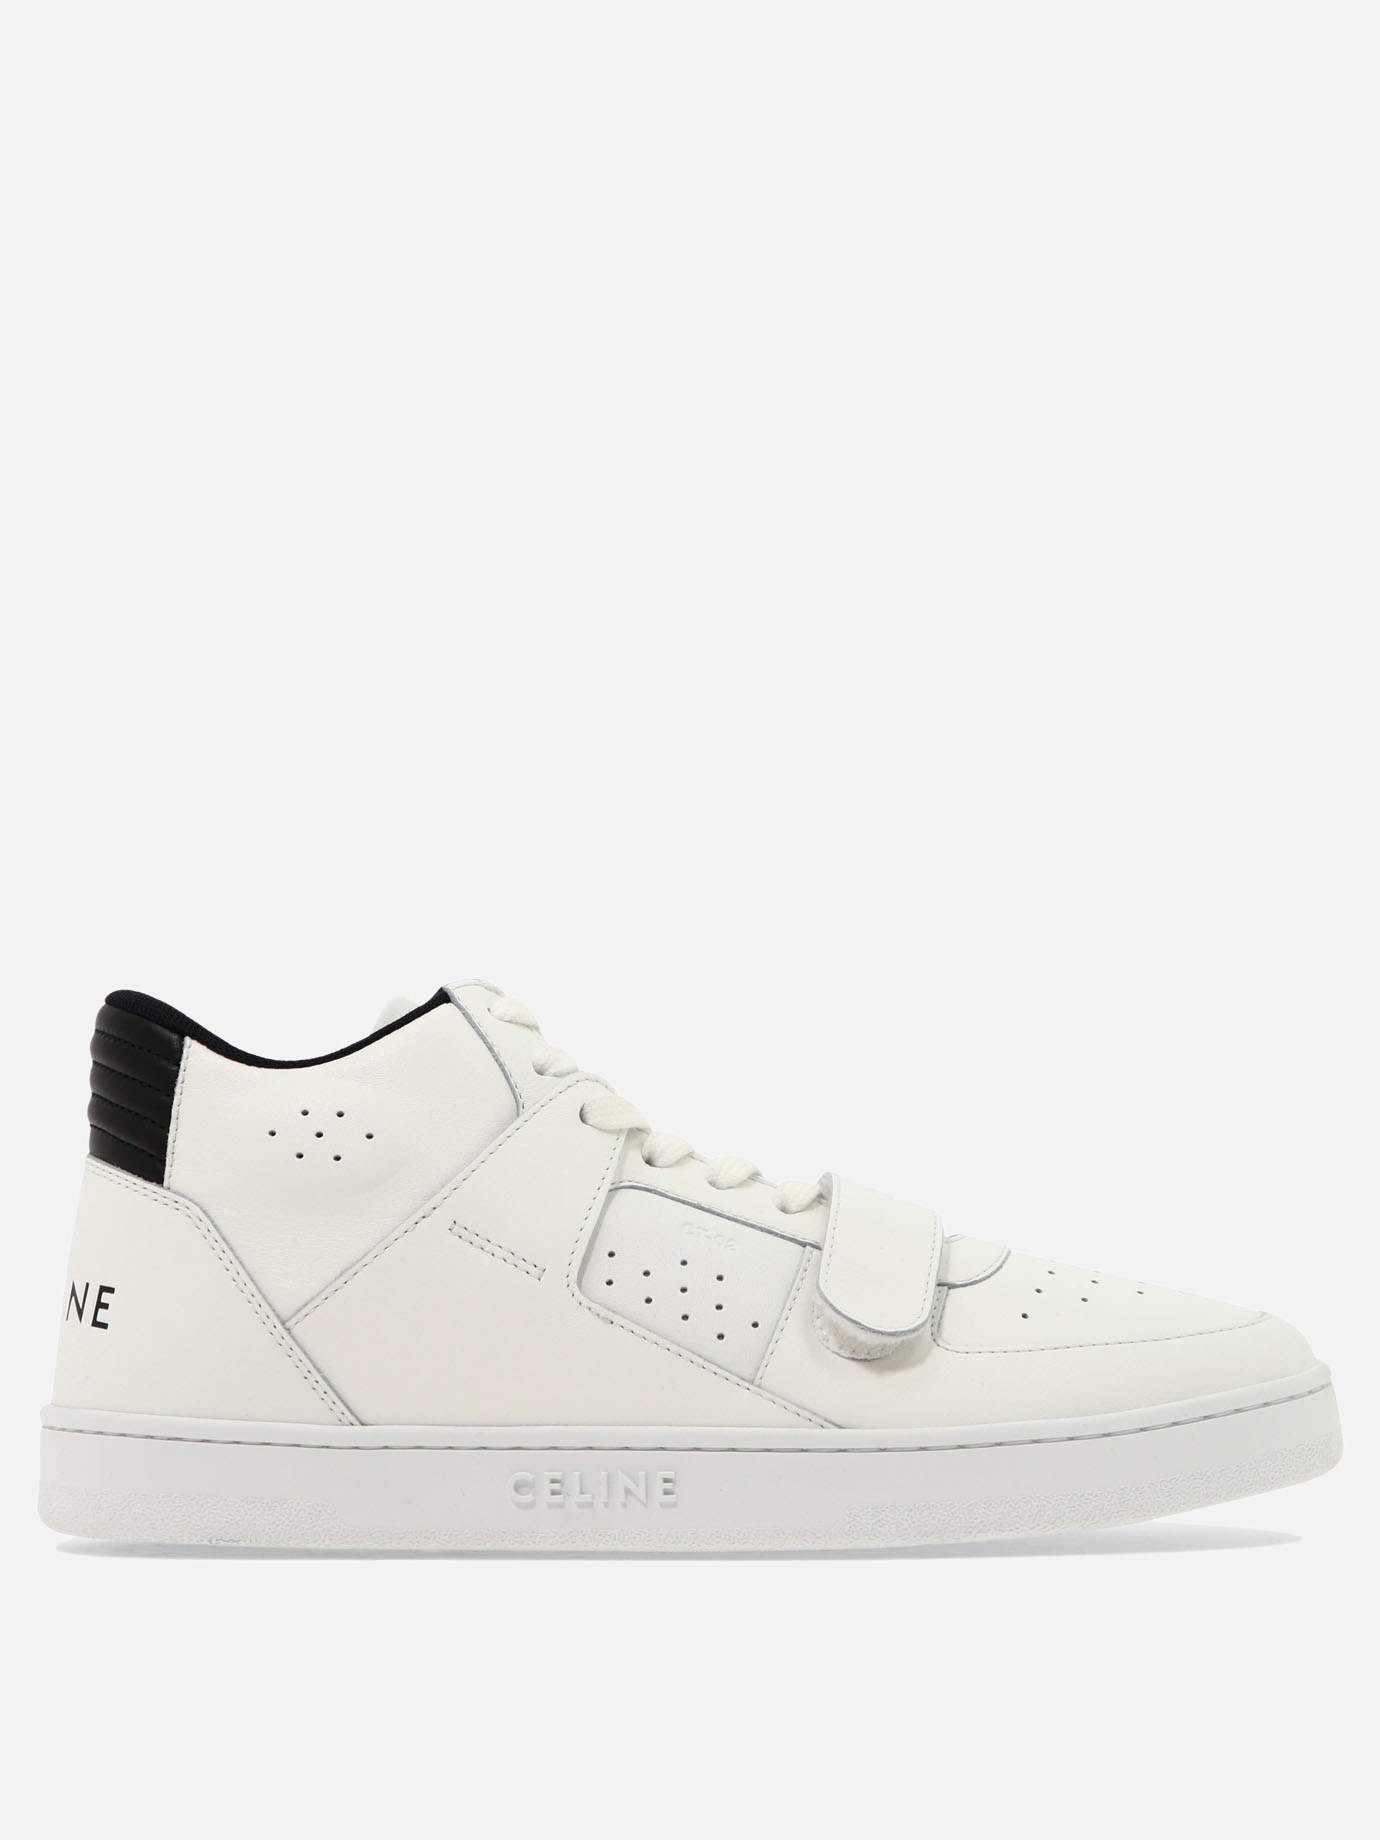 Sneaker  CT-02  by Celine